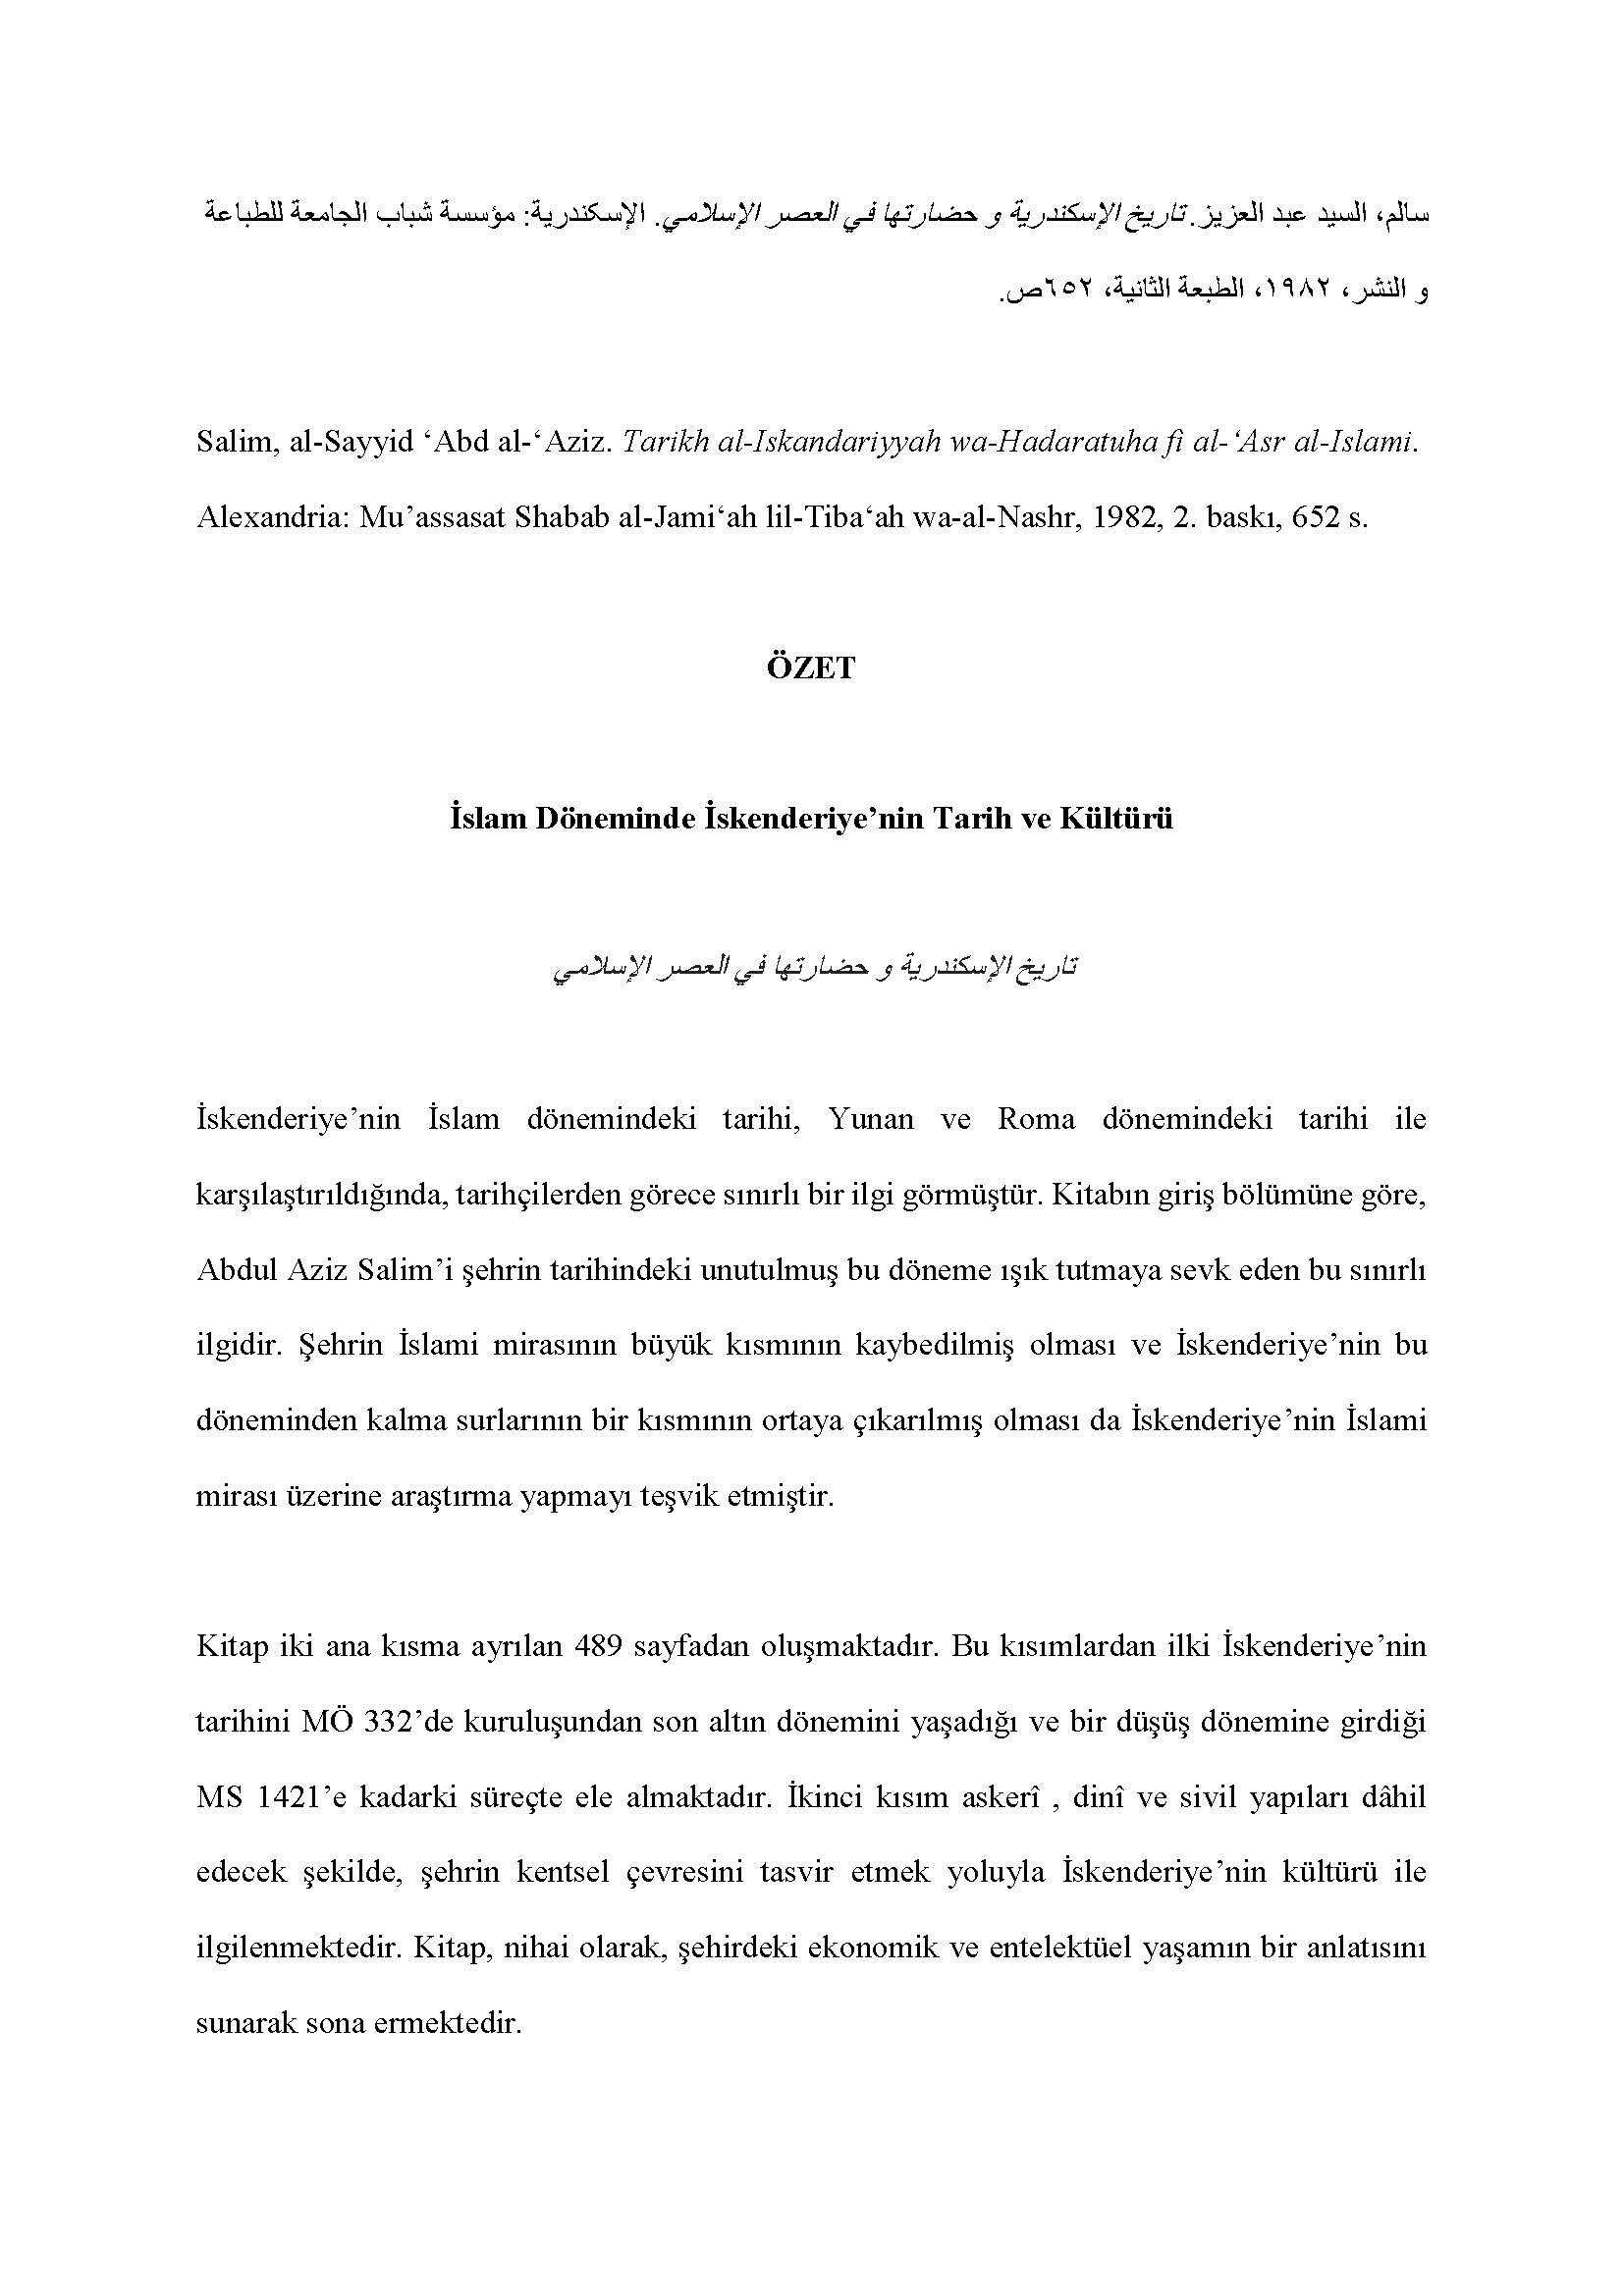 Al-Sayyid  Abd al Aziz Salim - <div><br></div><div><div style="text-align: right; ">سالم، السيد عبد العزيز. تاريخ الإسكندرية و حضارتها في العصر الإسلامي . الإسکندرية: مؤسسة شباب الجامعة للطباعة و النشر، ١٩٨٢، الطبعة الثانية، ٦٥٢ ص</div><div><br></div><div>Salim, al-Sayyid ʻAbd al-ʻAziz. Tarikh al-Iskandariyyah wa-Hadaratuha fi al-ʻAsr al-Islami. Alexandria: Muʼassasat Shabab al-Jami‘ah lil-Tiba‘ah wa-al-Nashr, 1982, 2. baskı, 652 s.</div><div><br></div><div style="text-align: center; "><span style="font-weight: bold;">ÖZET</span></div><div style="text-align: center; "><span style="font-weight: bold;"><br></span></div><div style="text-align: center; "><span style="font-weight: bold;">İslam Döneminde İskenderiye’nin Tarih ve Kültürü</span></div><div style="text-align: center; "><br></div><div style="text-align: center; "><span style="font-style: italic;">تاريخ الإسكندرية و حضارتها في العصر الإسلامي</span></div><div style="text-align: center; "><br></div><div>İskenderiye’nin İslam dönemindeki tarihi, Yunan ve Roma dönemindeki tarihi ile karşılaştırıldığında, tarihçilerden görece sınırlı bir ilgi görmüştür. Kitabın giriş bölümüne göre, Abdul Aziz Salim’i şehrin tarihindeki unutulmuş bu döneme ışık tutmaya sevk eden bu sınırlı ilgidir. Şehrin İslami mirasının büyük kısmının kaybedilmiş olması ve İskenderiye’nin bu döneminden kalma surlarının bir kısmının ortaya çıkarılmış olması da İskenderiye’nin İslami mirası üzerine araştırma yapmayı teşvik etmiştir.</div><div><br></div><div>Kitap iki ana kısma ayrılan 489 sayfadan oluşmaktadır. Bu kısımlardan ilki İskenderiye’nin tarihini MÖ 332’de kuruluşundan son altın dönemini yaşadığı ve bir düşüş dönemine girdiği MS 1421’e kadarki süreçte ele almaktadır. İkinci kısım askerî , dinî ve sivil yapıları dâhil edecek şekilde, şehrin kentsel çevresini tasvir etmek yoluyla İskenderiye’nin kültürü ile ilgilenmektedir. Kitap, nihai olarak, şehirdeki ekonomik ve entelektüel yaşamın bir anlatısını sunarak sona ermektedir.</div><div><br></div><div>Eser her ne kadar İskenderiye’nin uzun tarihi ile ilgili genel bir bakış açısı sunsa da, yine de daha çok yedi tarihî döneme ayırdığı İslami döneme odaklanmaktadır ki bu yedi bölüm şehrin kuruluşuyla başlamakta, Emevi, Abbasi, Fatımi ve Eyyubi dönemleriyle devam etmekte ve şehrin gerilemesiyle sona ermektedir. Bu sınıflandırma okuyucunun zaman çerçevesini ve en önemli tarihsel olayları kavramasını kolaylaştırmaktadır. Kitabın ikinci kısmına gelince, bu kısmın betimsel anlatımı İskenderiye’nin tanık olduğu, camilerin dinî mimarisi ve sarayların sivil mimarisi ile mesken ve kamu binalarının mimarisi gibi en önemli medeni başarılara göre tematik olarak bölünmüştür. Kitabın ortalama okuyucu kitlesi tarafından anlaşılabilmesini mümkün kılan, kolay ve açık bir yapıya sahip olan üslubu da bahis konusu edilmeye değerdir.</div><div><br></div><div>Yazar İskenderiye’nin İslami mimarisine gözle görülür bir ilgi gösterse de, kitabın bazı eksikliklerini, özellikle görsel malzemelerin bulunmadığını belirtmek gerekir. Bunlar, kitabı zenginleştirebilir ve okuyucular arasında şehre dair daha geniş bir farkındalık yaratabilirdi. Buna rağmen, kitap İskenderiye’nin tarihî ve kentsel kültürüne dair iyi araştırılmış ve kapsayıcı bir genel bakış açısı sunarak okuyucunun dikkatini şehrin İslami mirasının kentsel zenginliğine çekmekte başarılı olmuştur.</div><div><br></div><div>Tariq Razzouq</div><div><br></div><div>Çeviren Metin Yeğenoğlu</div></div>